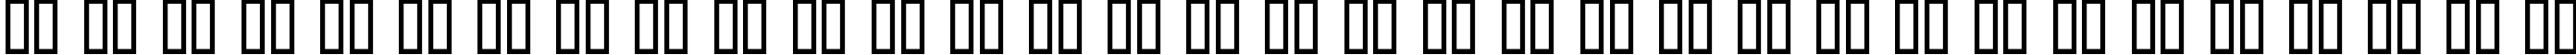 Пример написания русского алфавита шрифтом Caslon Antique Bold